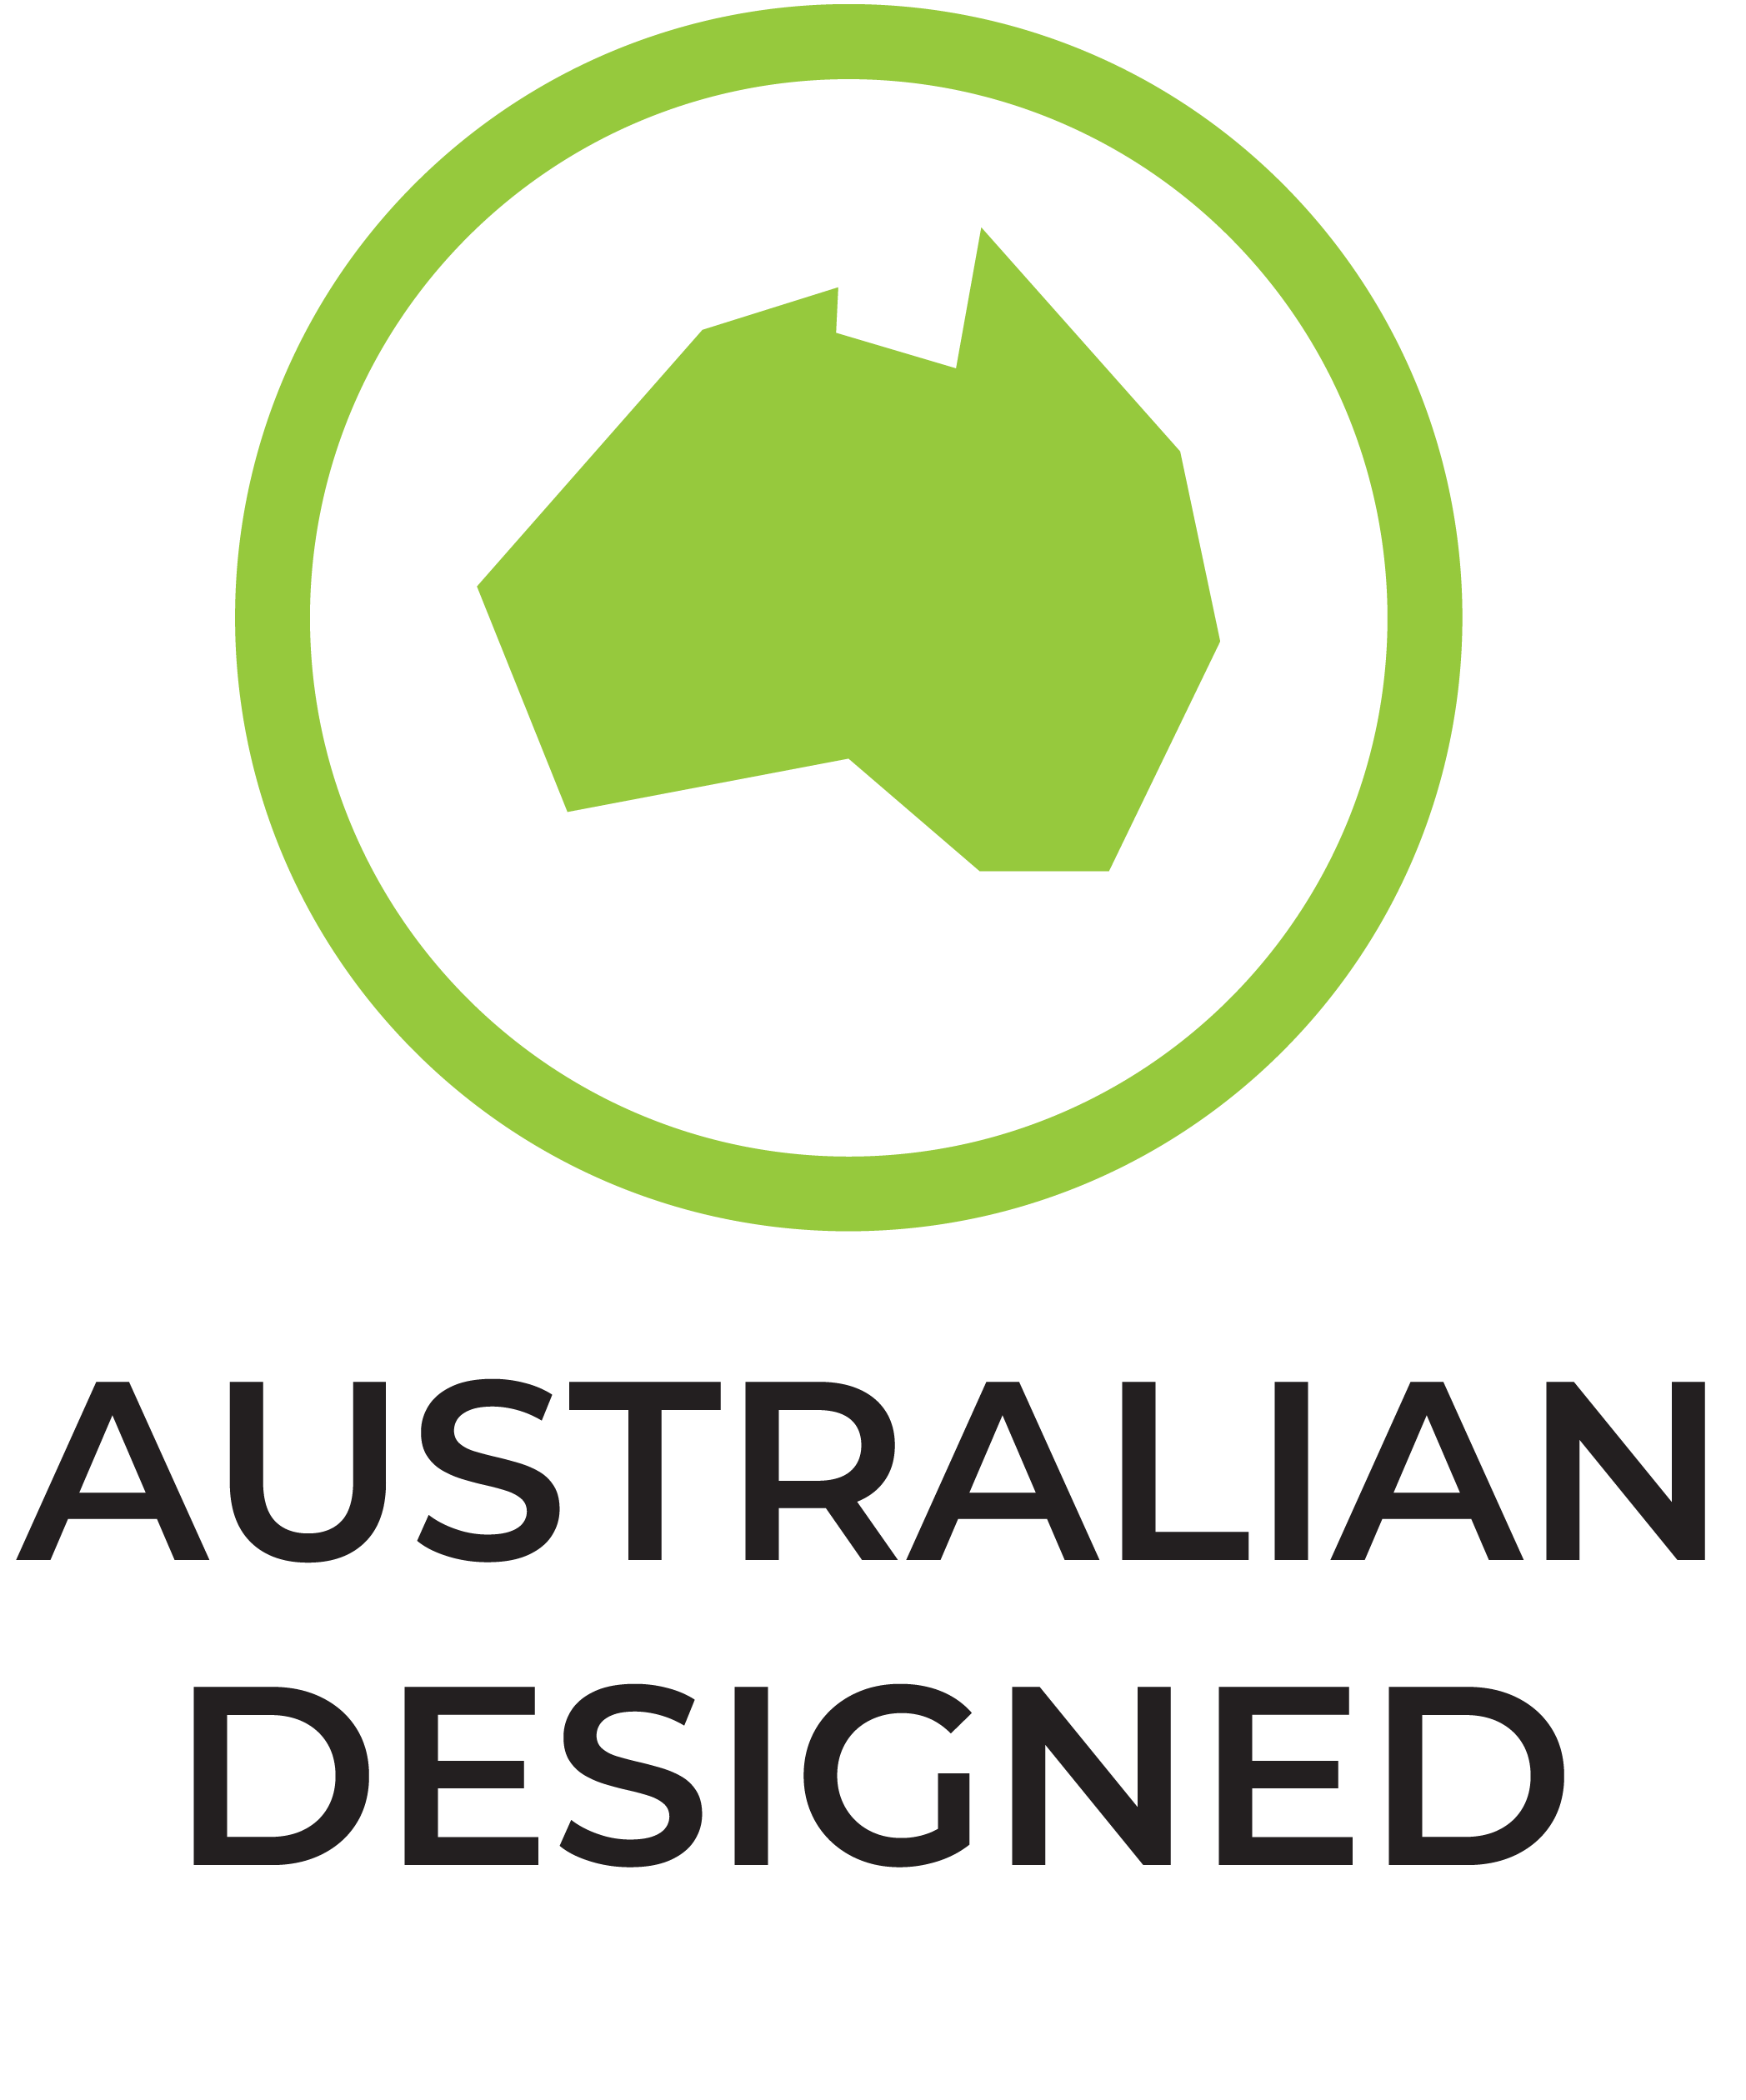 Australian designed